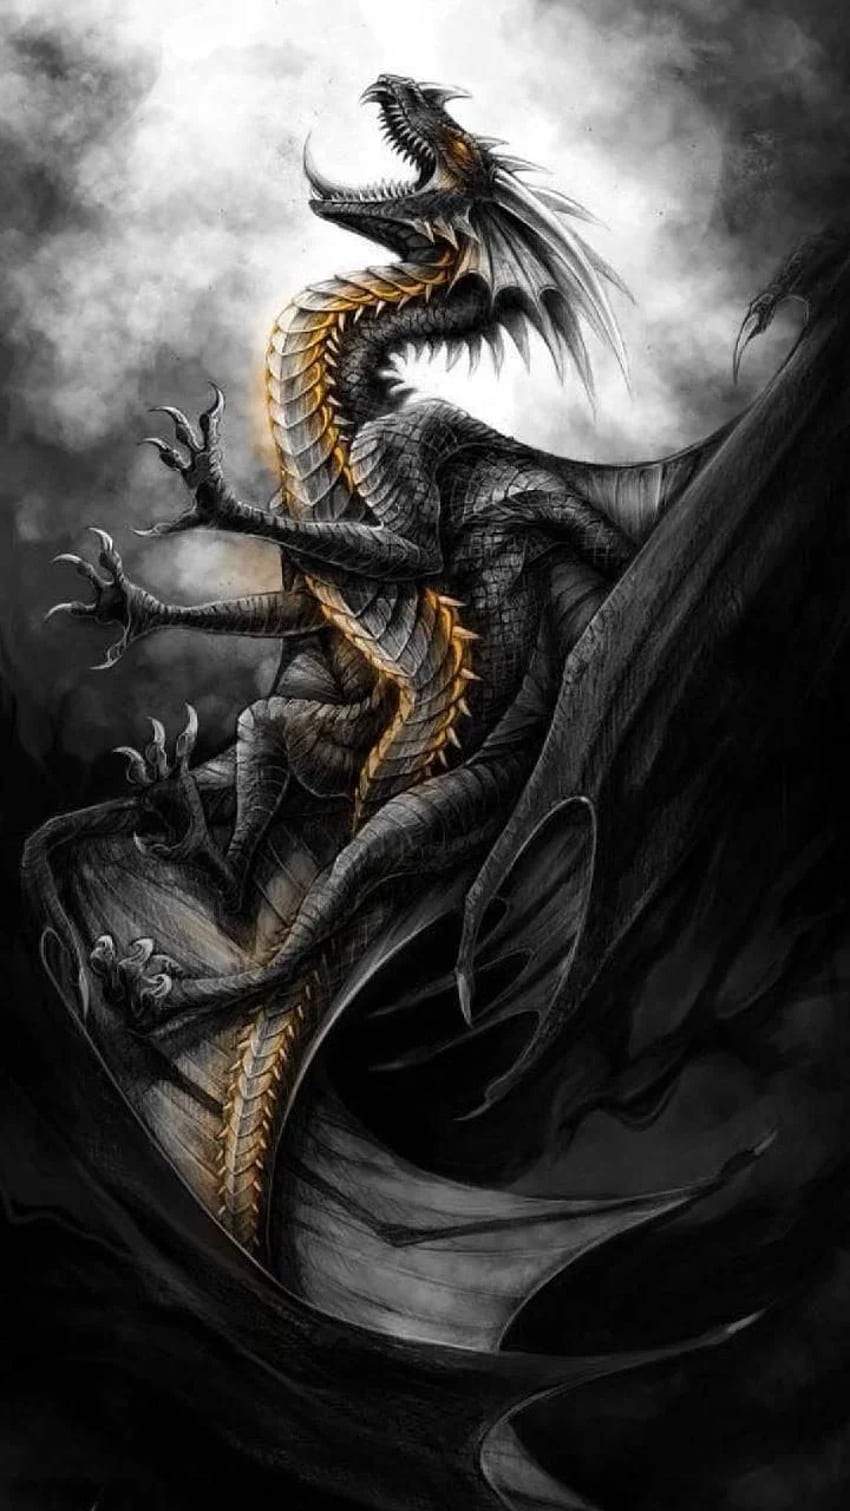 มังกรดำ โดย georgekev - c4 ตอนนี้ เรียกดู Wallpape สีดำยอดนิยมหลายล้านรายการ Fantasy dragon มังกร อาร์ตเวิร์คมังกร Black Myth: Wukong วอลล์เปเปอร์โทรศัพท์ HD